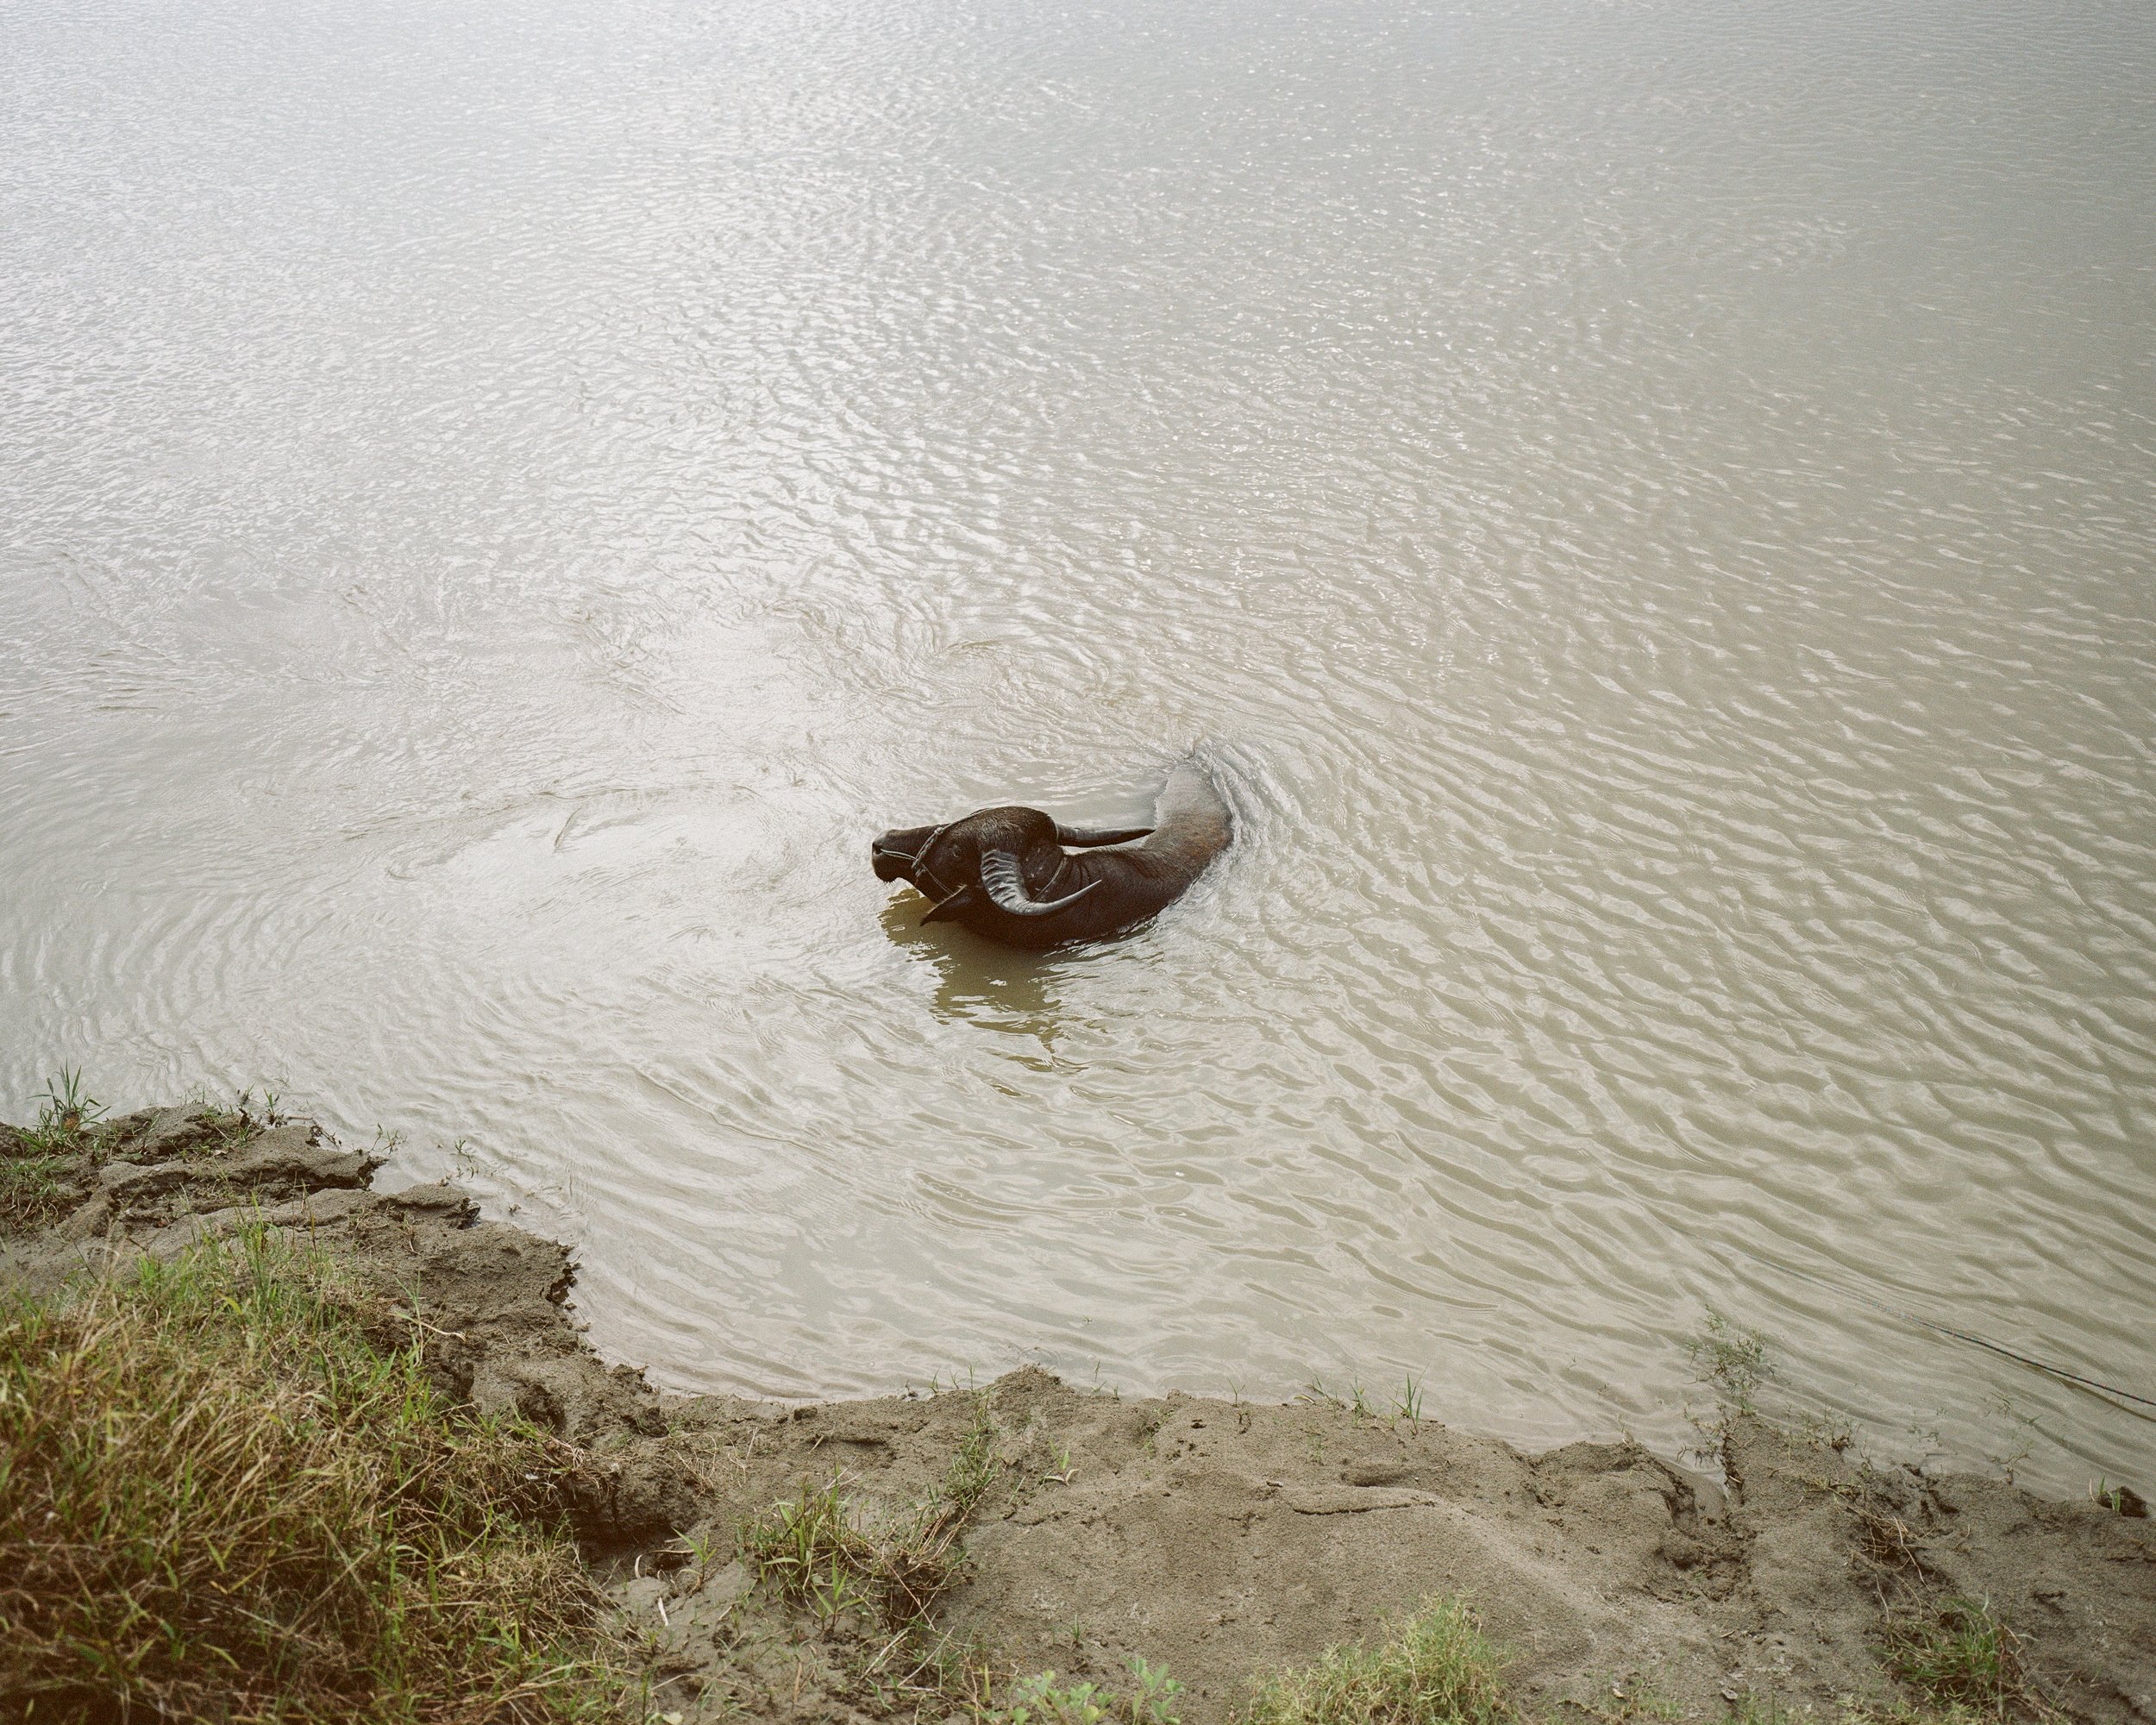   A water buffalo cools in the river Subansiri. Major Chapori, Majuli, India — 2021  